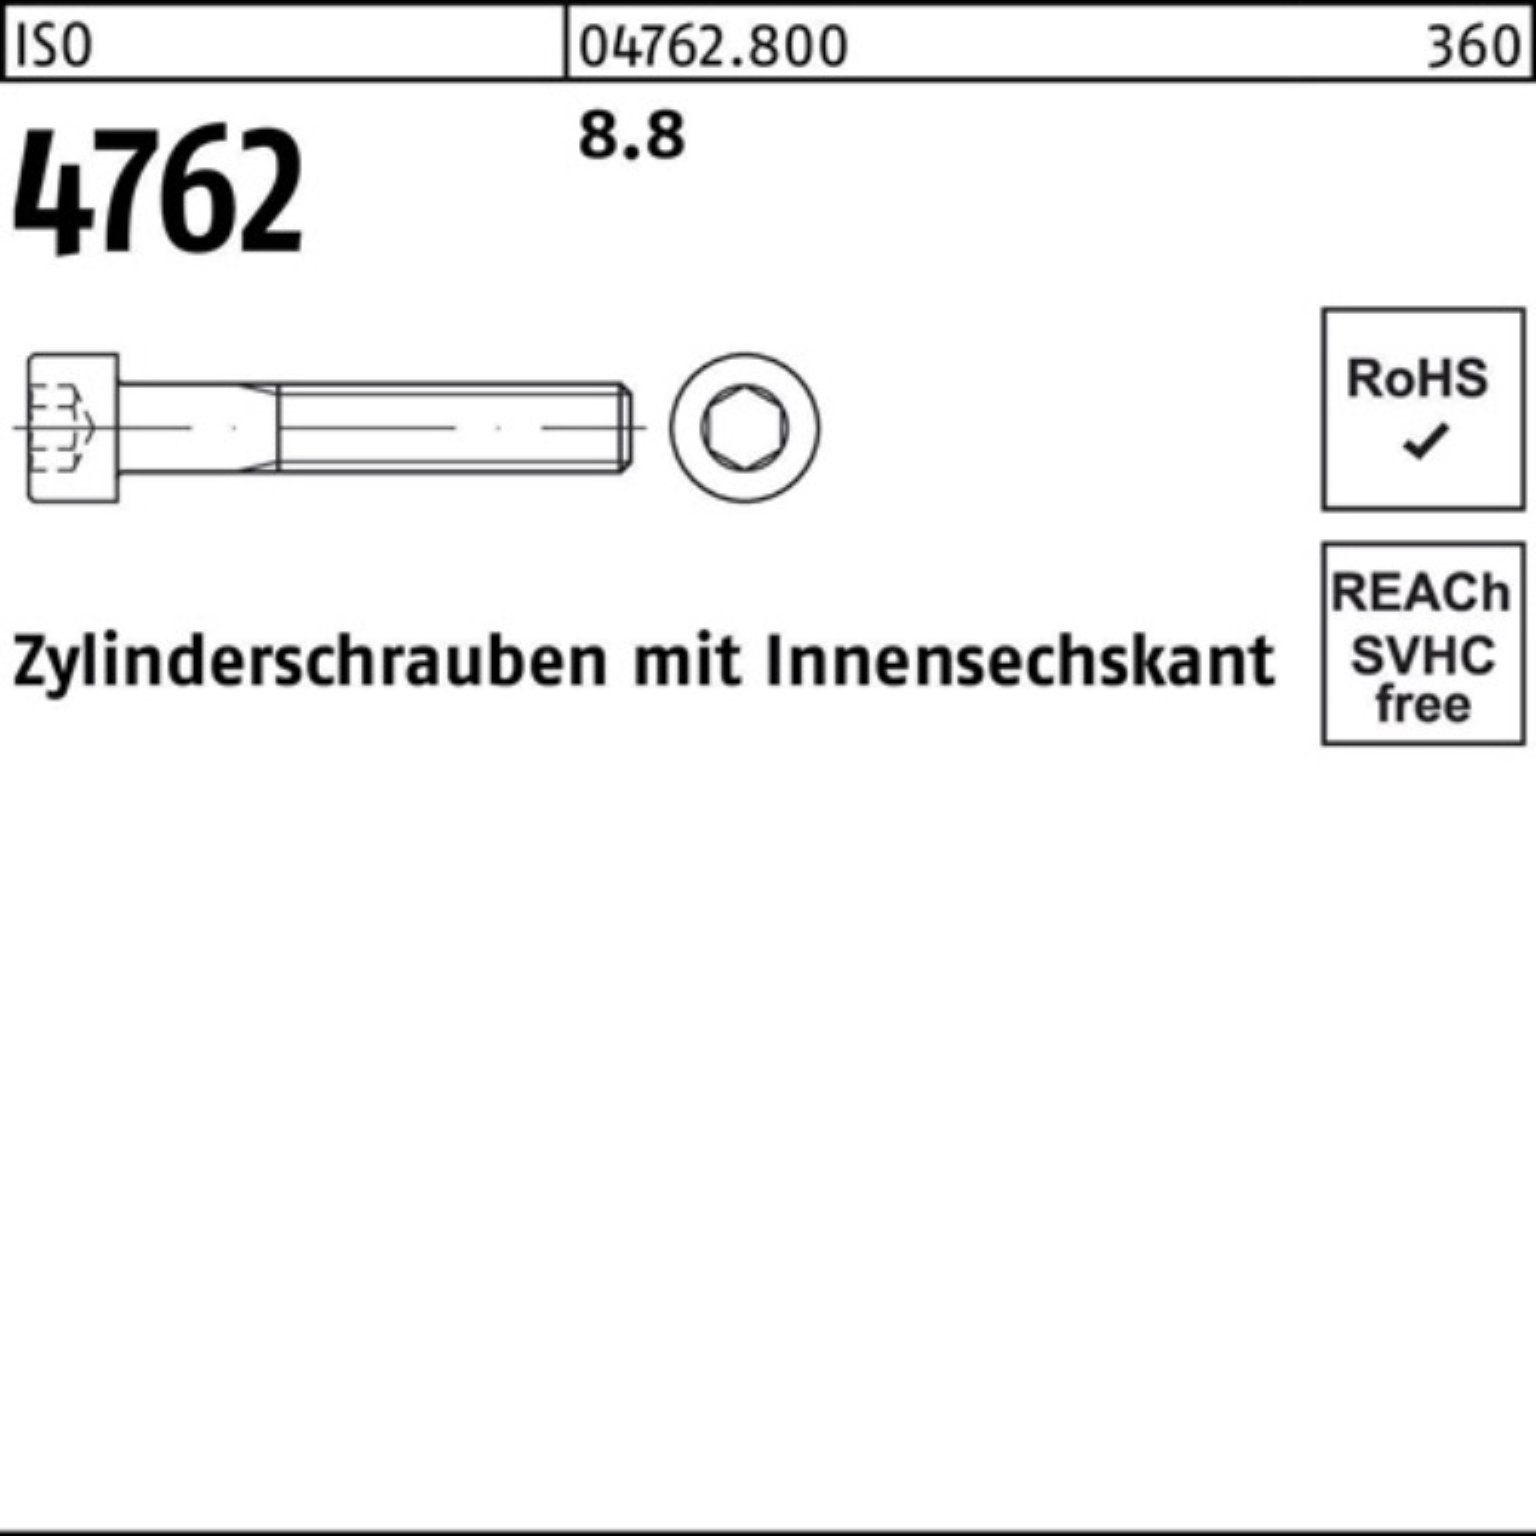 Pack ISO 8.8 1 460 Reyher 100er I Zylinderschraube Stück Innen-6kt M20x 4762 Zylinderschraube